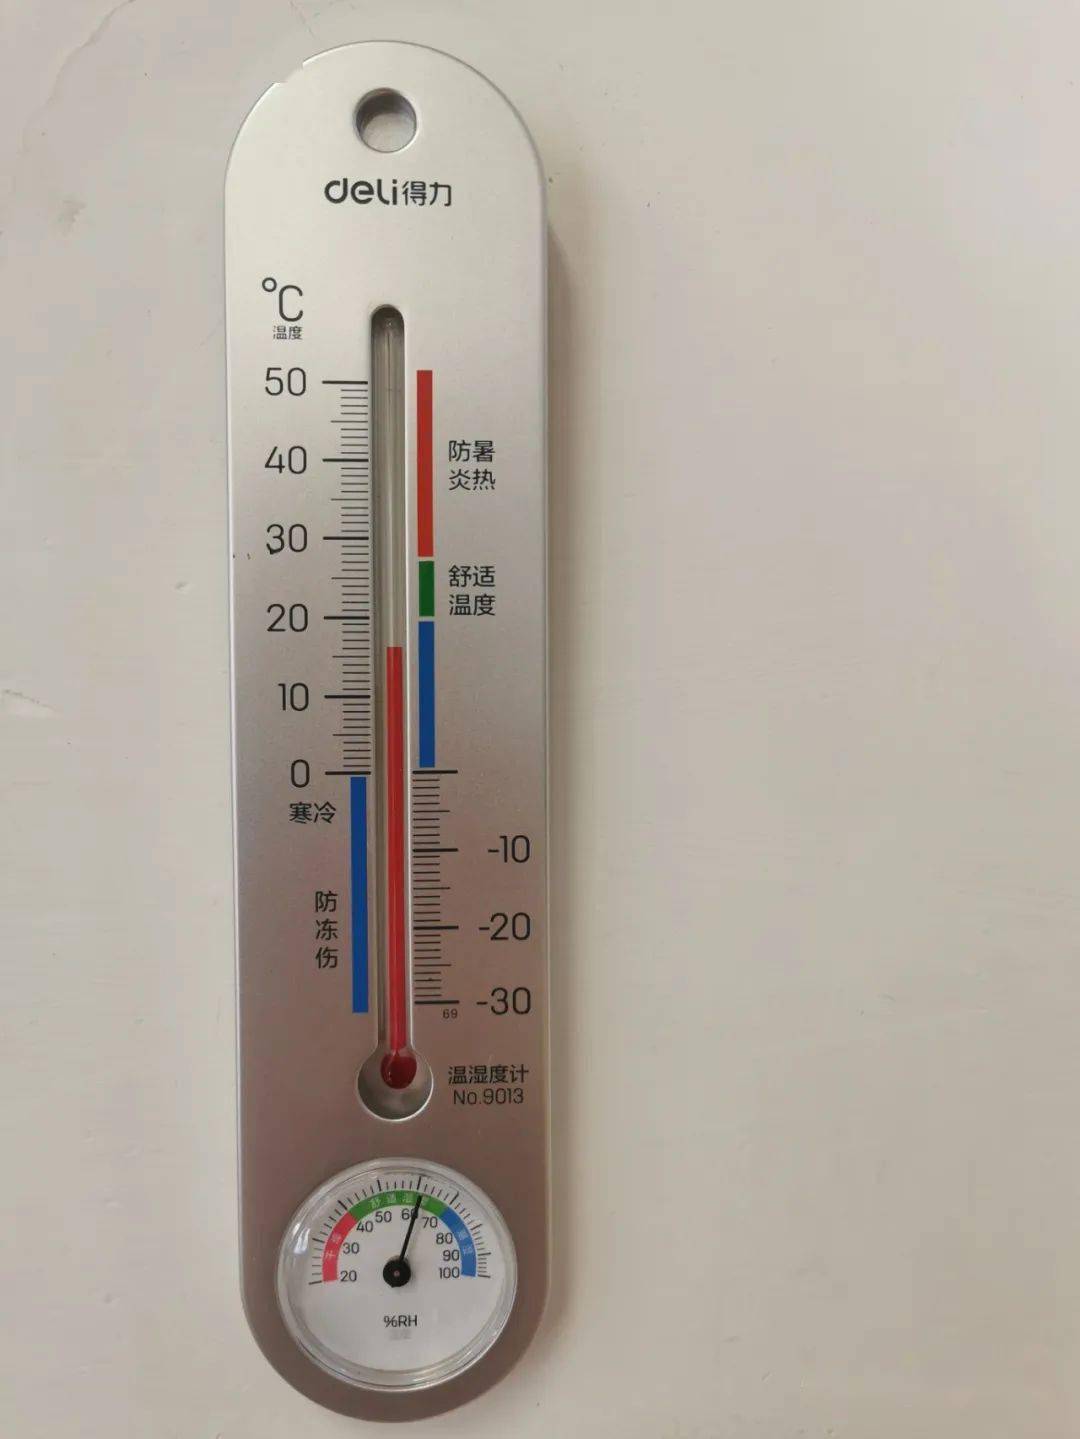 教室里挂有干湿温度计,老师们会根据室温开启空调,使冬季室温保持在16